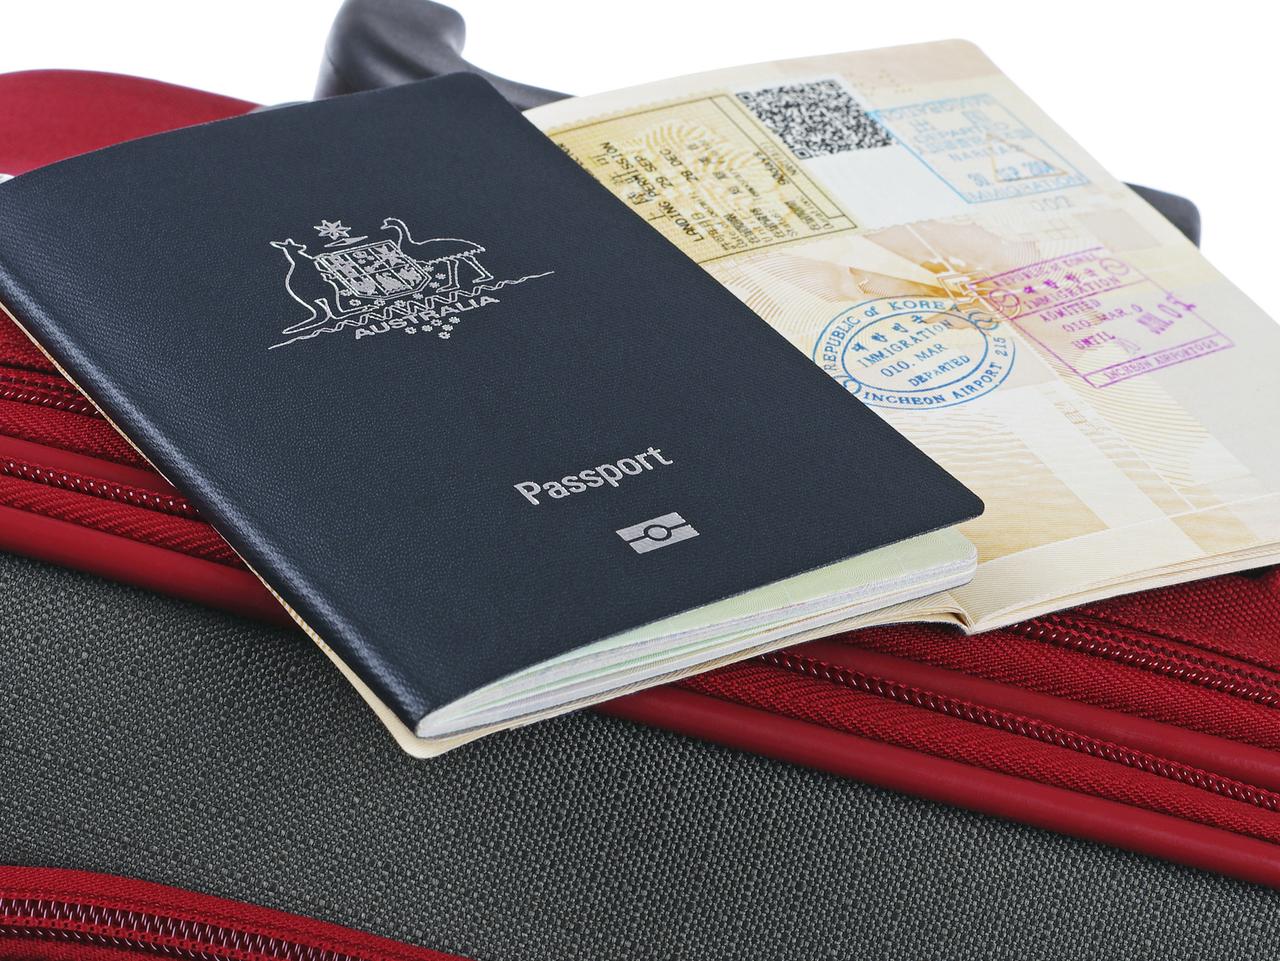 australian passport travel to hong kong